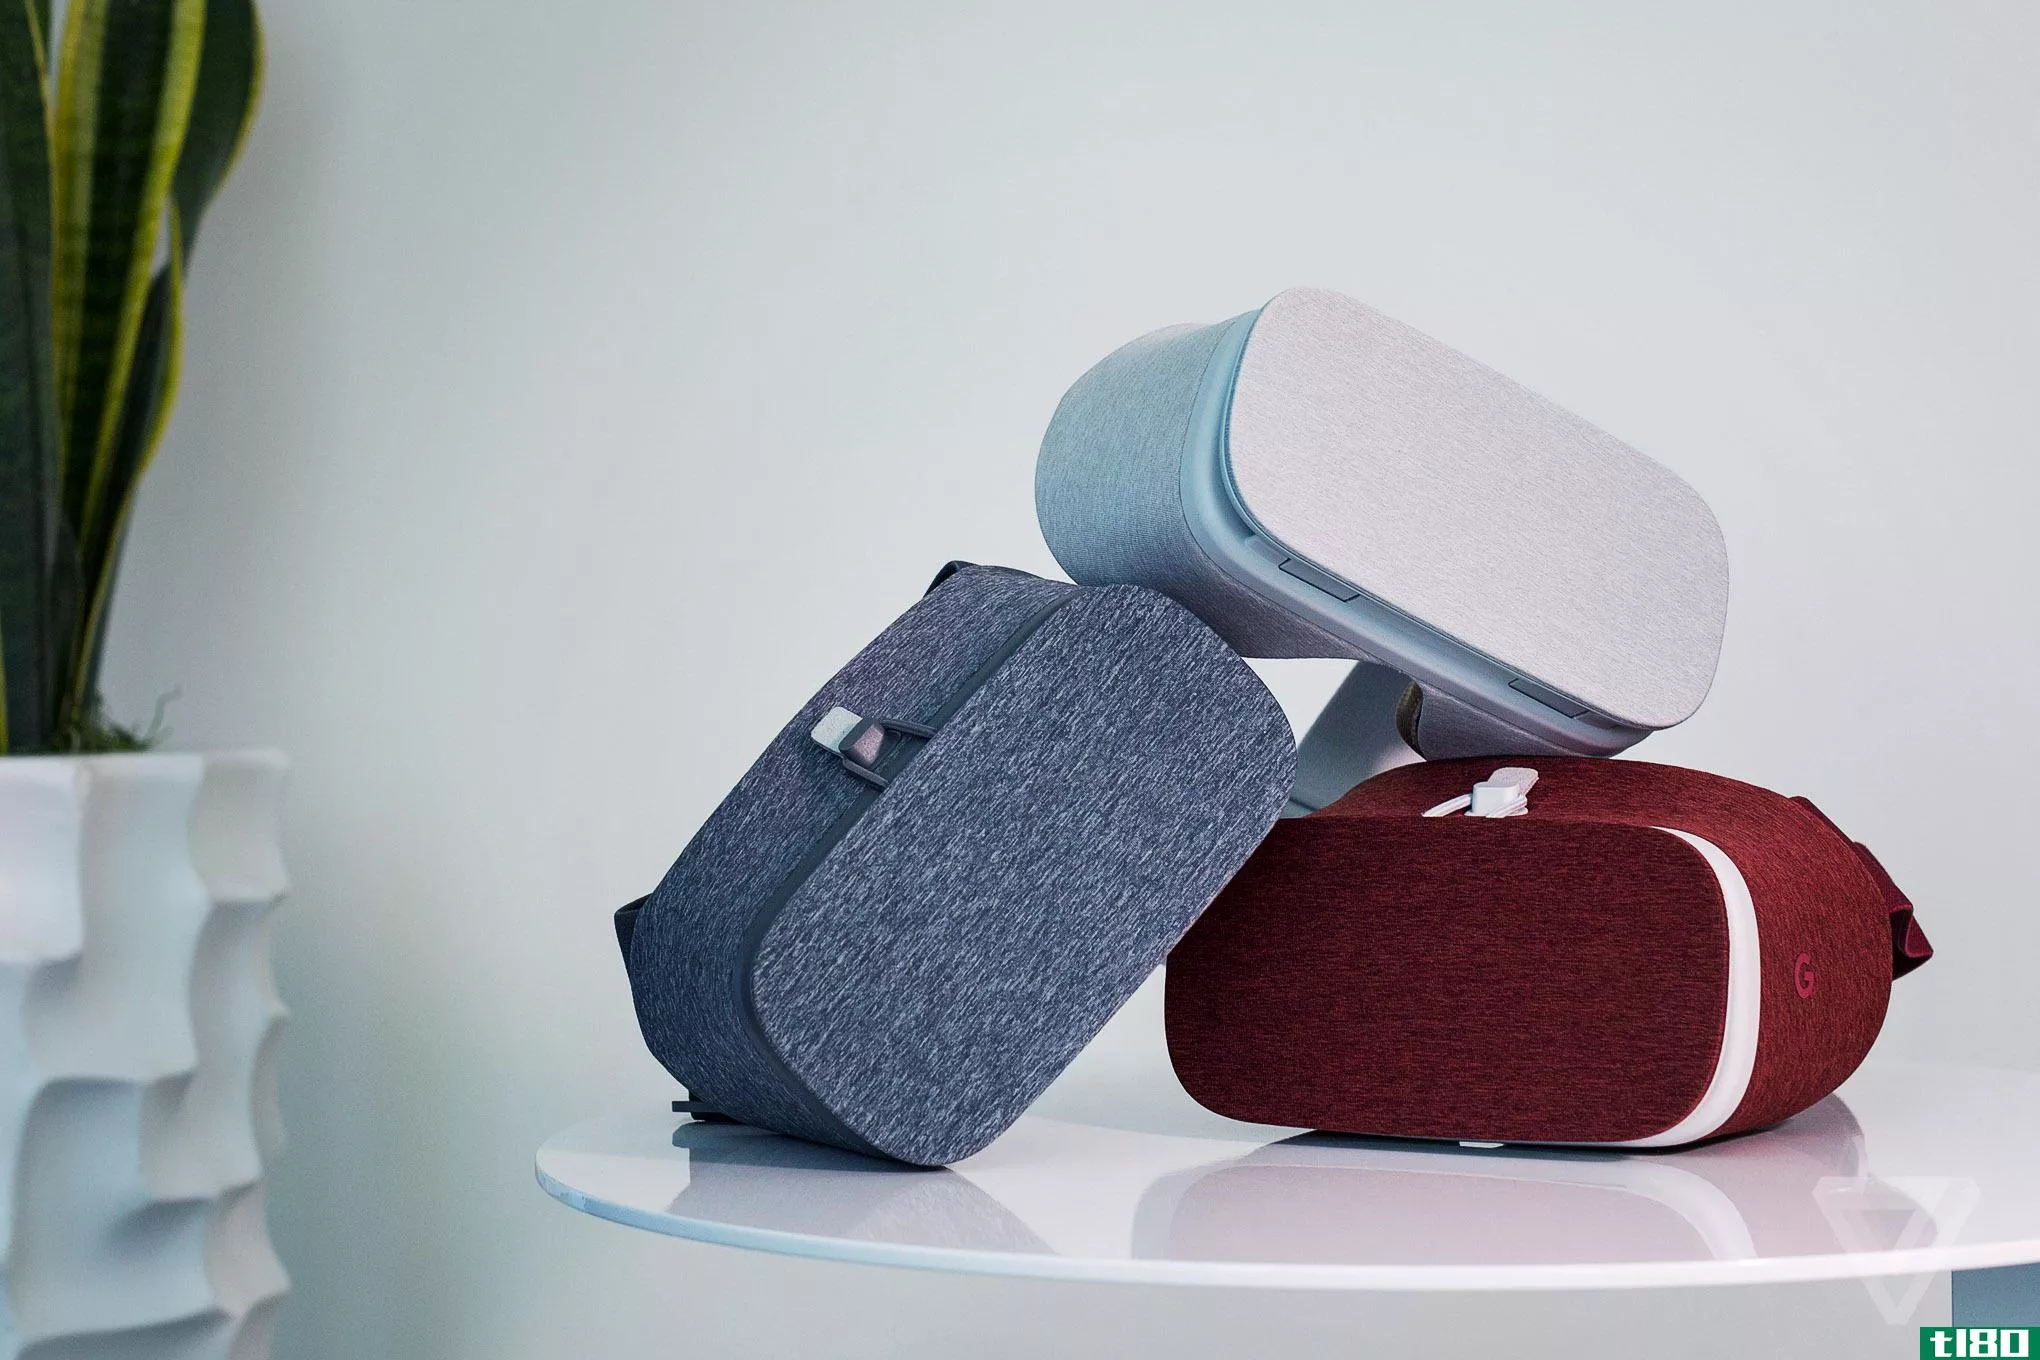 谷歌的daydream view vr耳机现在有深红色和白色两种颜色